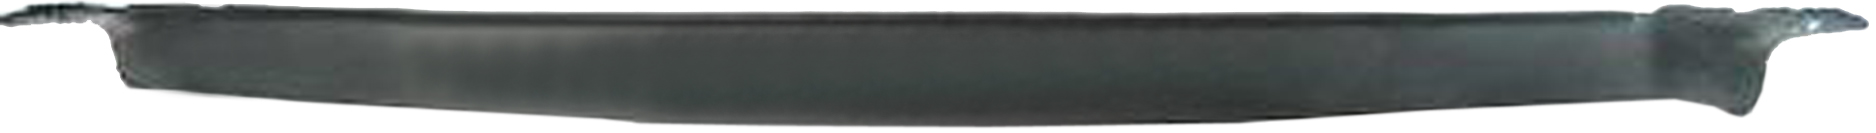 Aftermarket APRON/VALANCE/FILLER PLASTIC for CHEVROLET - V20 SUBURBAN, V20 SUBURBAN,87-88,Front bumper deflector